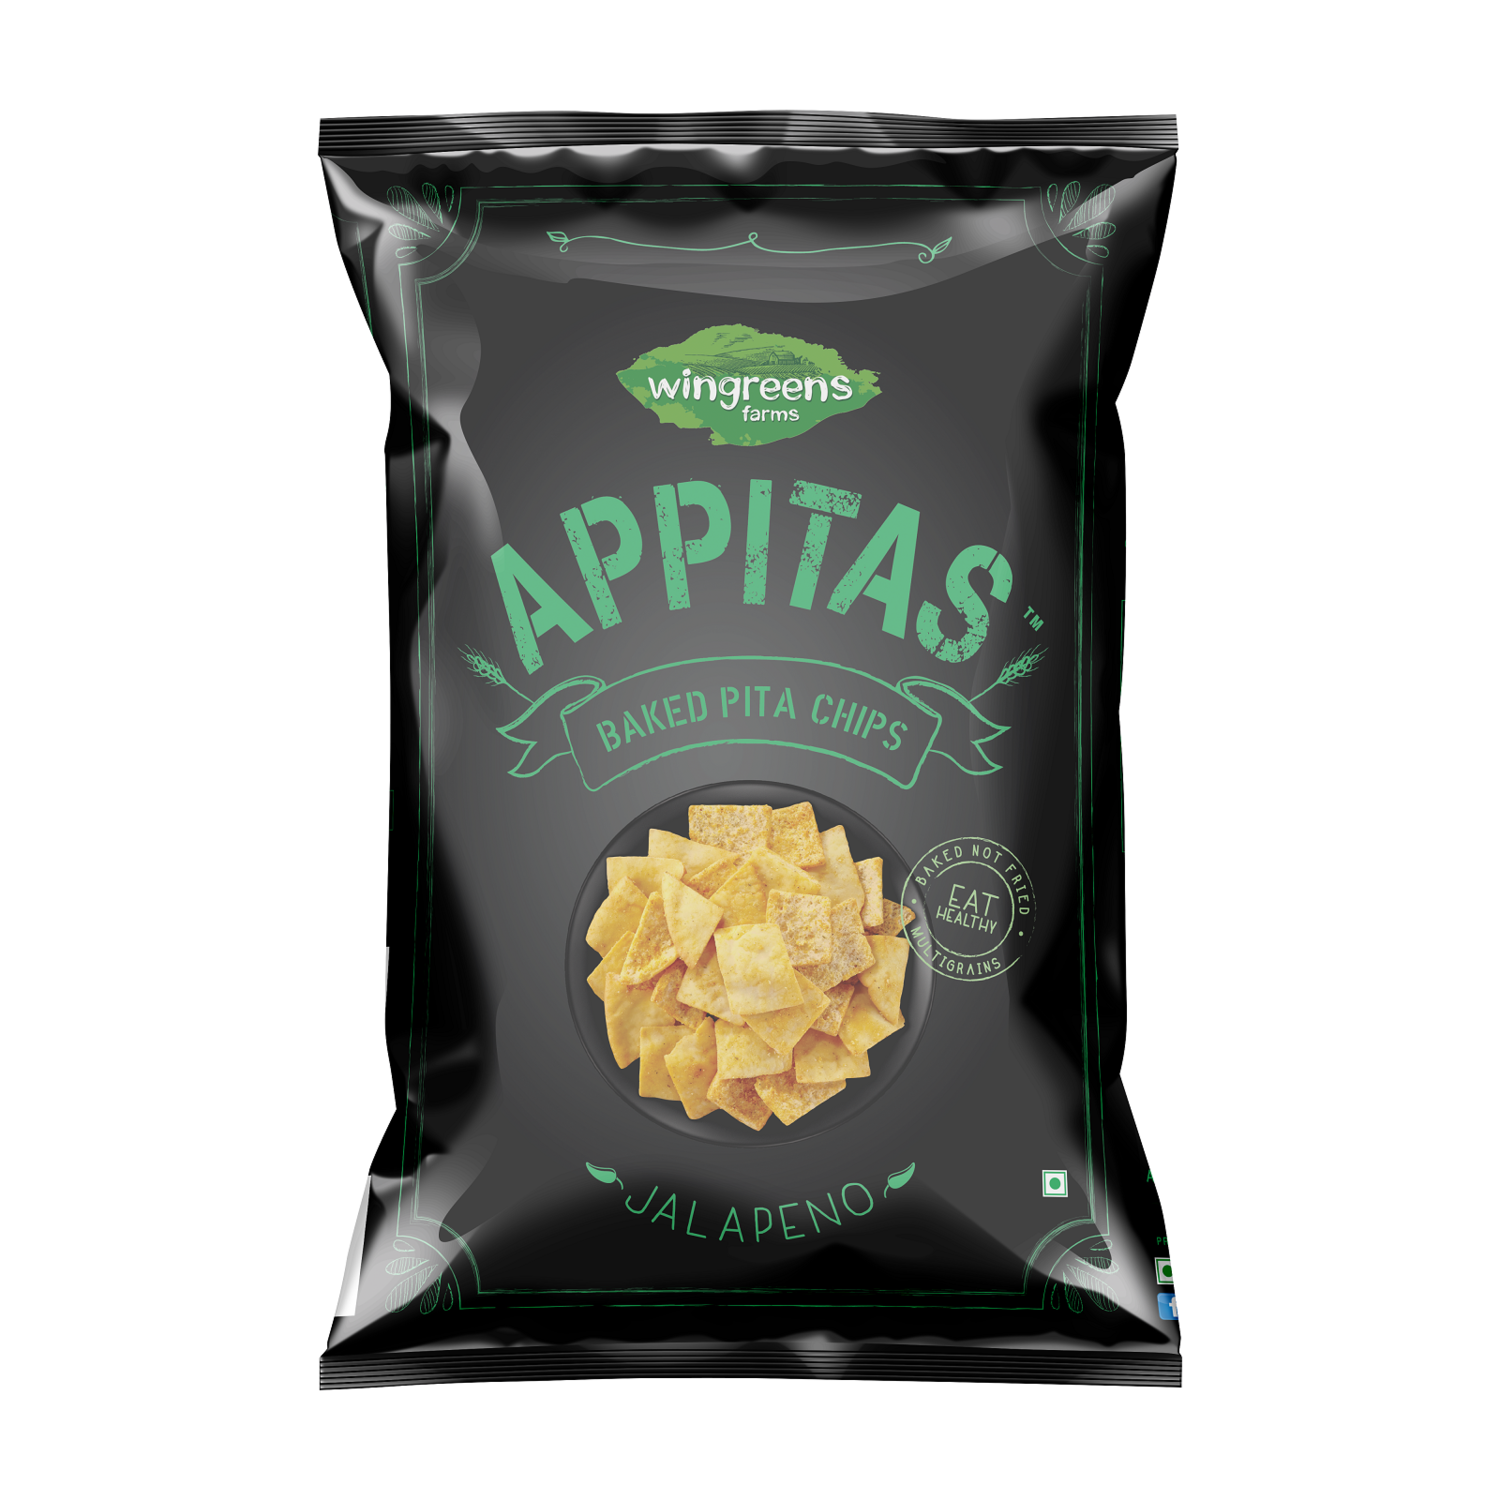 Appitas Pita Chips 150gms